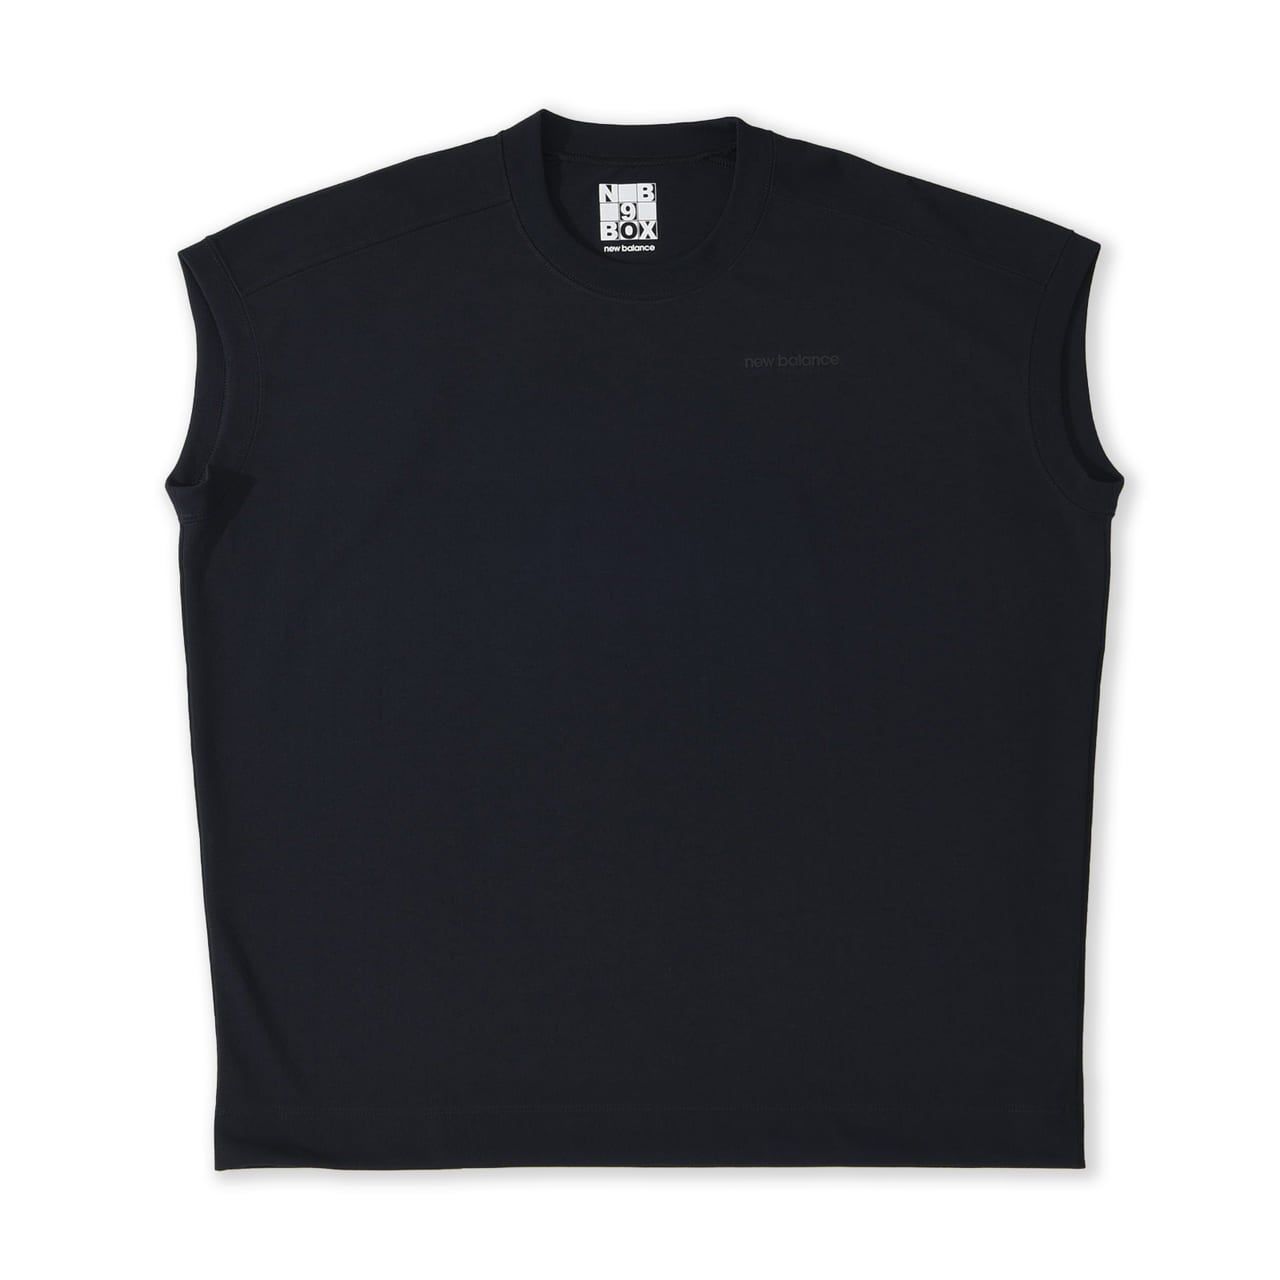 「New Balance（ニューバランス）」が展開するTシャツコレクション「9BOX（ナインボックス）」に新作が登場。9つのシルエットからお気に入りの一着を選ぶことができる。